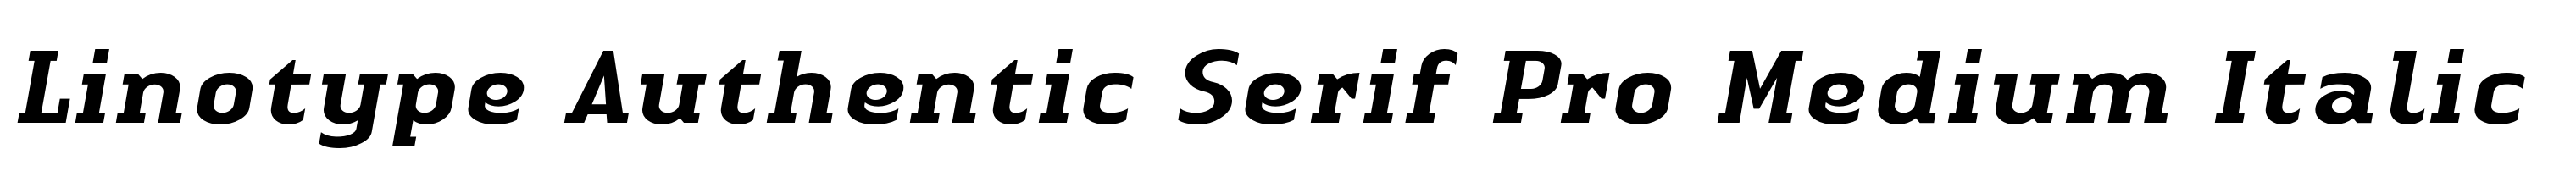 Linotype Authentic Serif Pro Medium Italic